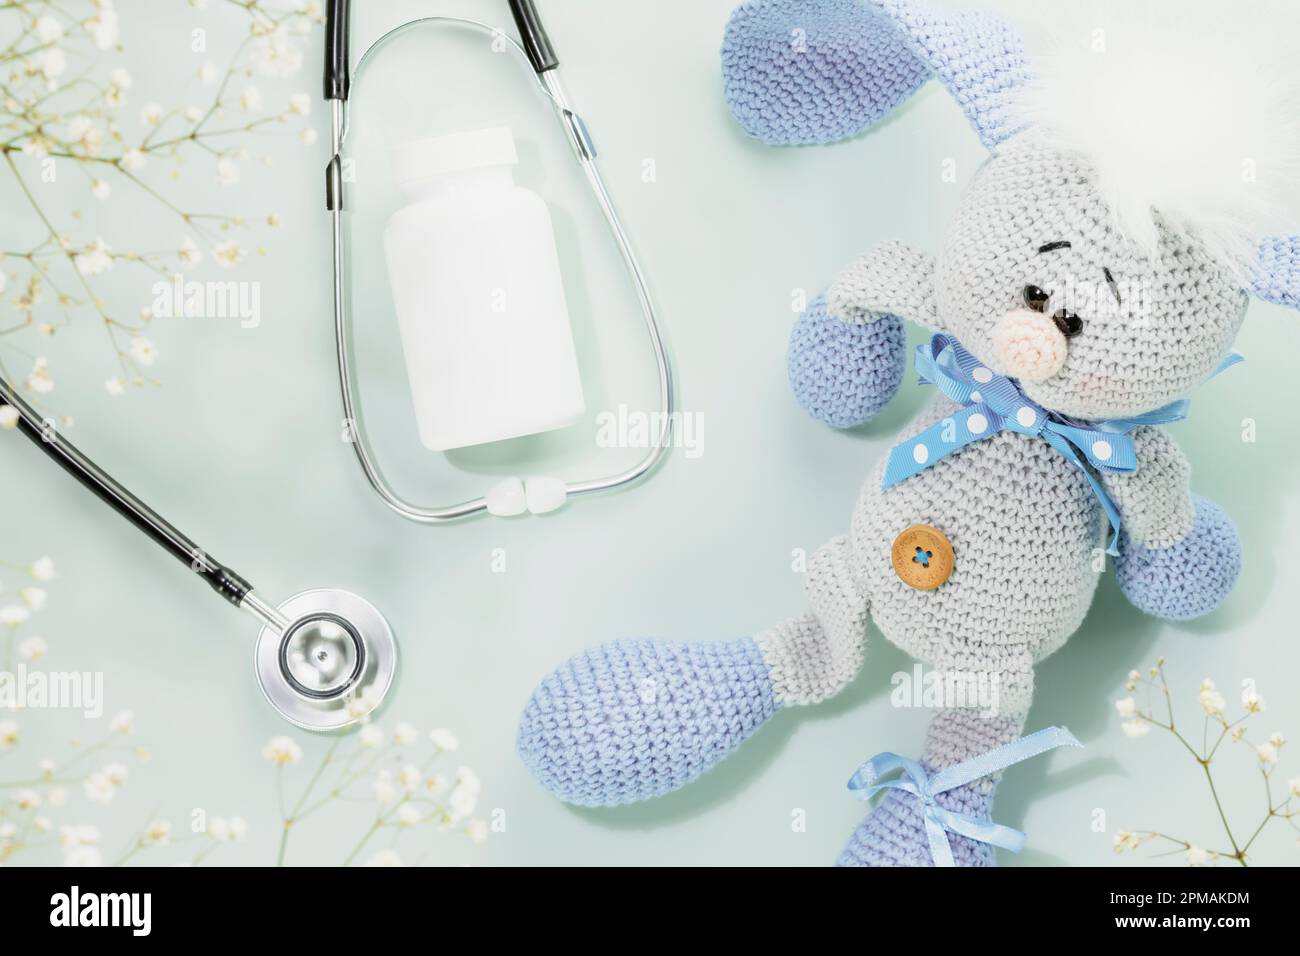 Kindergesundheitsfürsorge. Beilagen für Kinder, Vitamine oder Pillen in weißer Flasche mit Stethoskop und niedlichem gestricktem Spielzeughasen auf blauem Hintergrund mit weißen Blumen Stockfoto